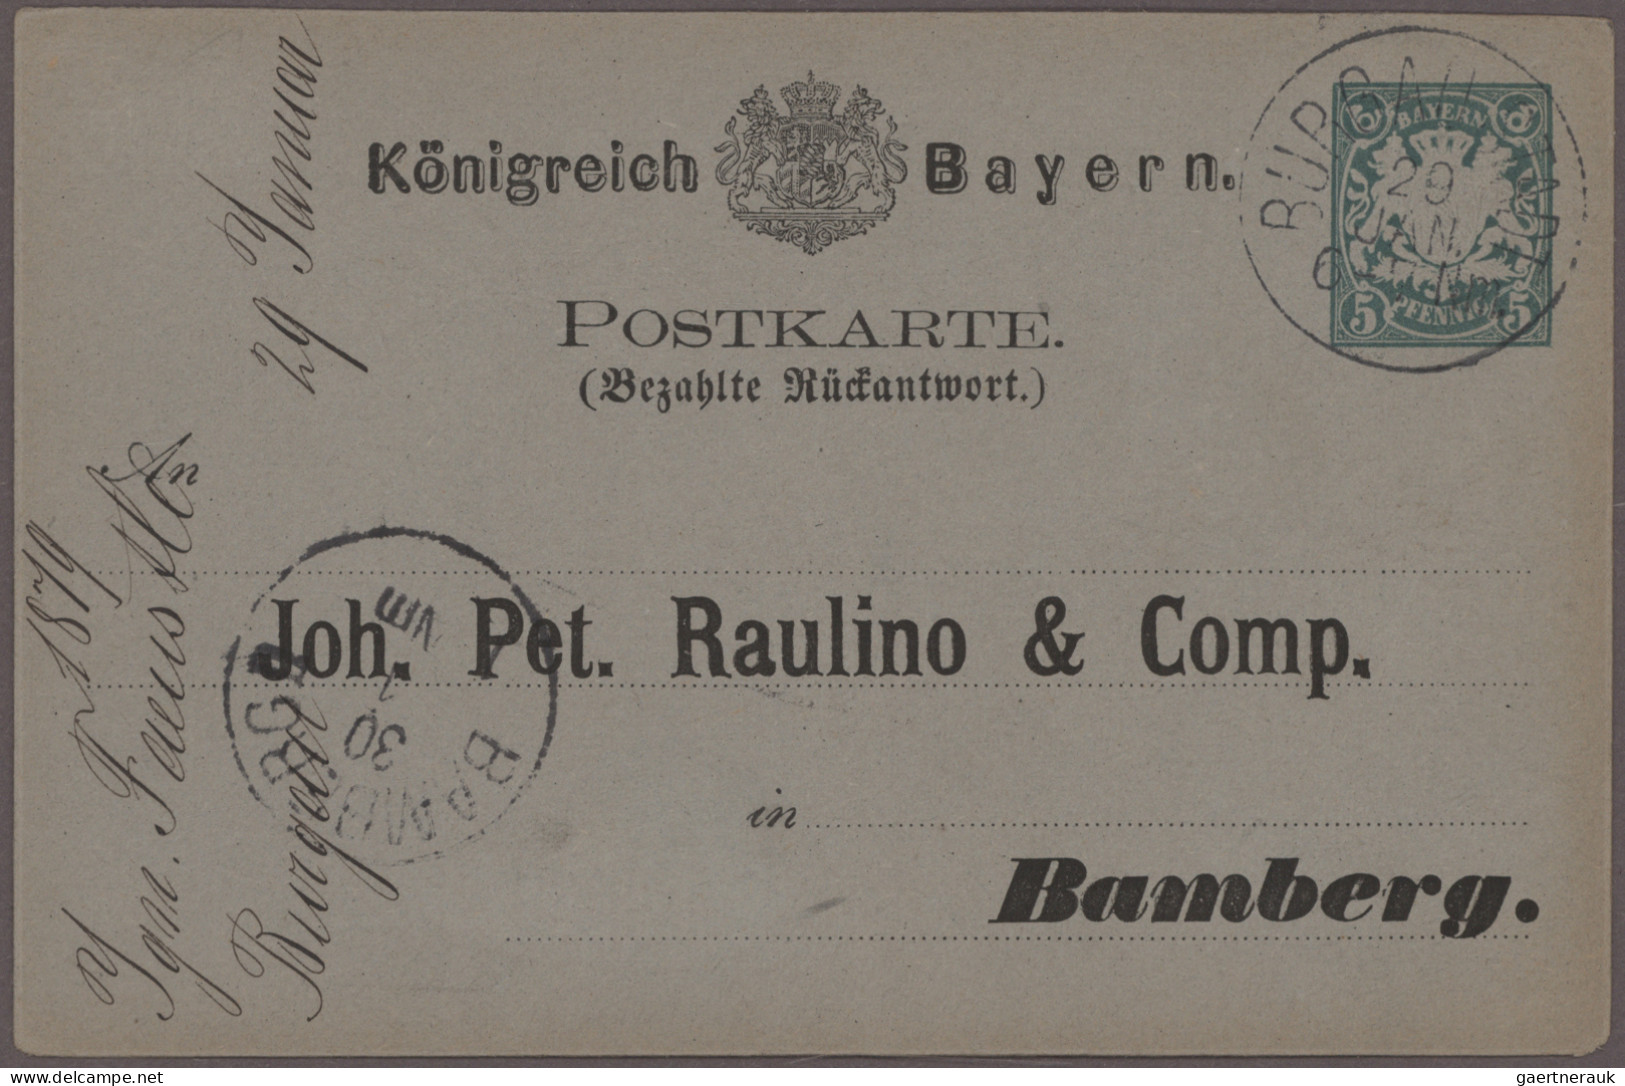 Bayern - Ganzsachen: 1880/1920 (ca.), Partie von ca. 120 gebrauchten und ungebra